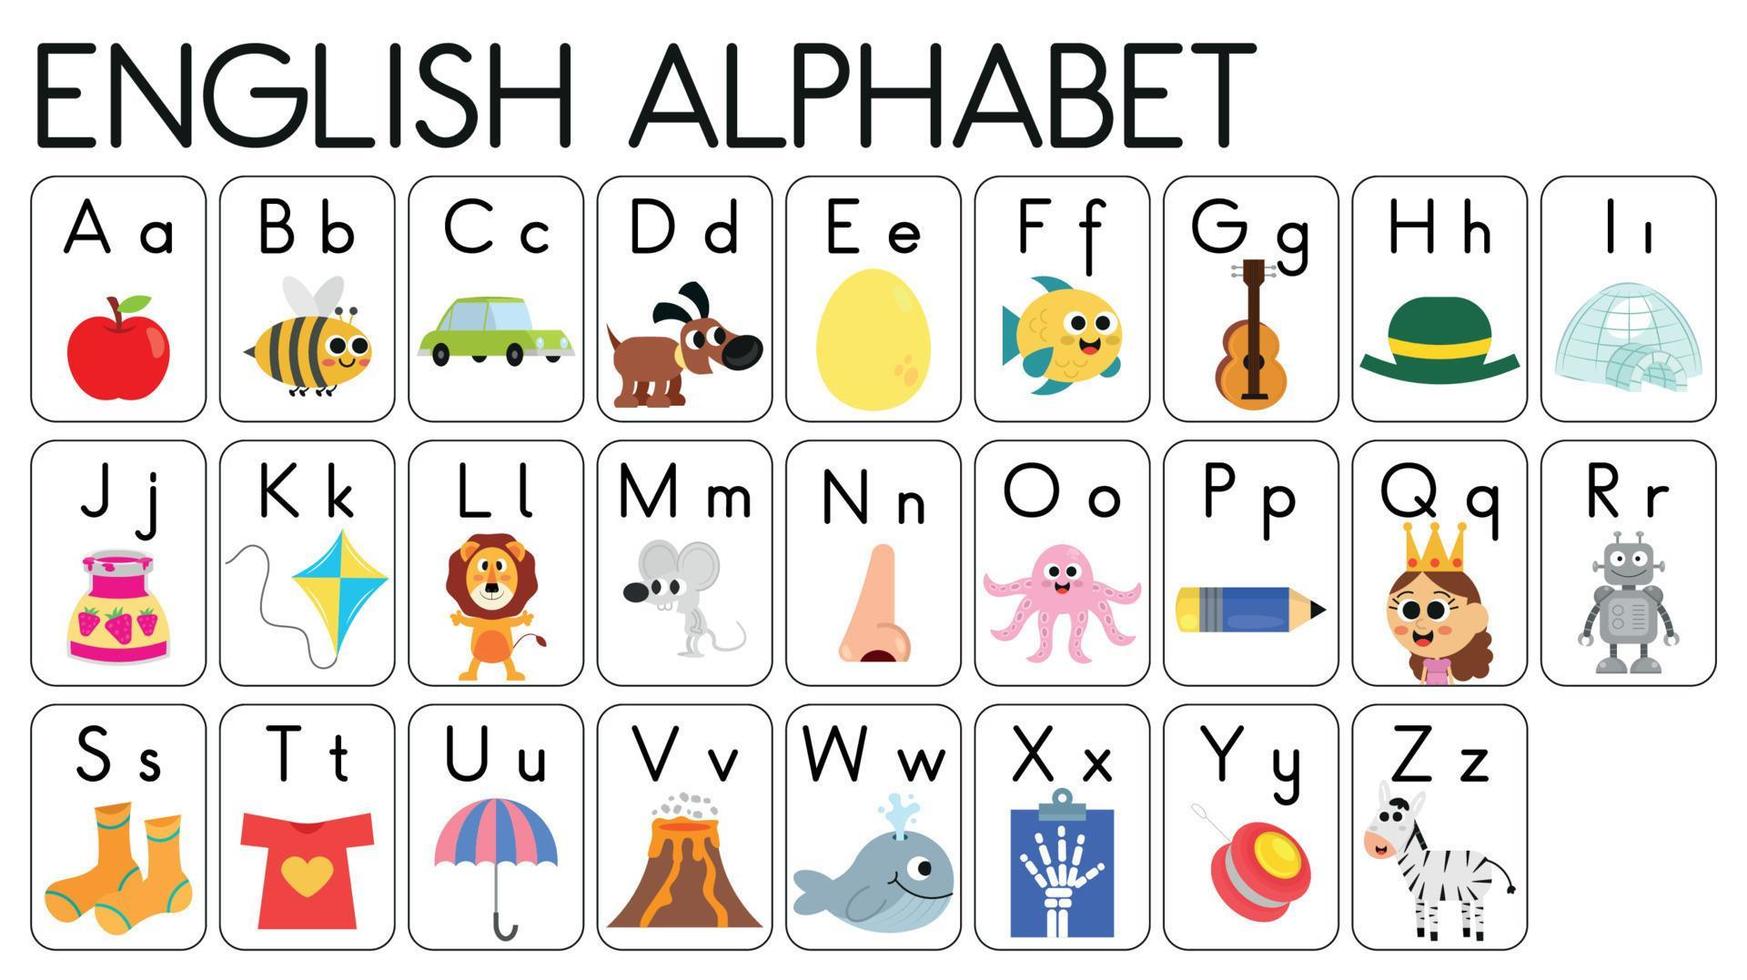 dictionnaire illustré de l'alphabet anglais. Dictionnaire illustré de l'alphabet anglais pour les enfants. cartes flash illustrées de l'alphabet anglais. vecteur